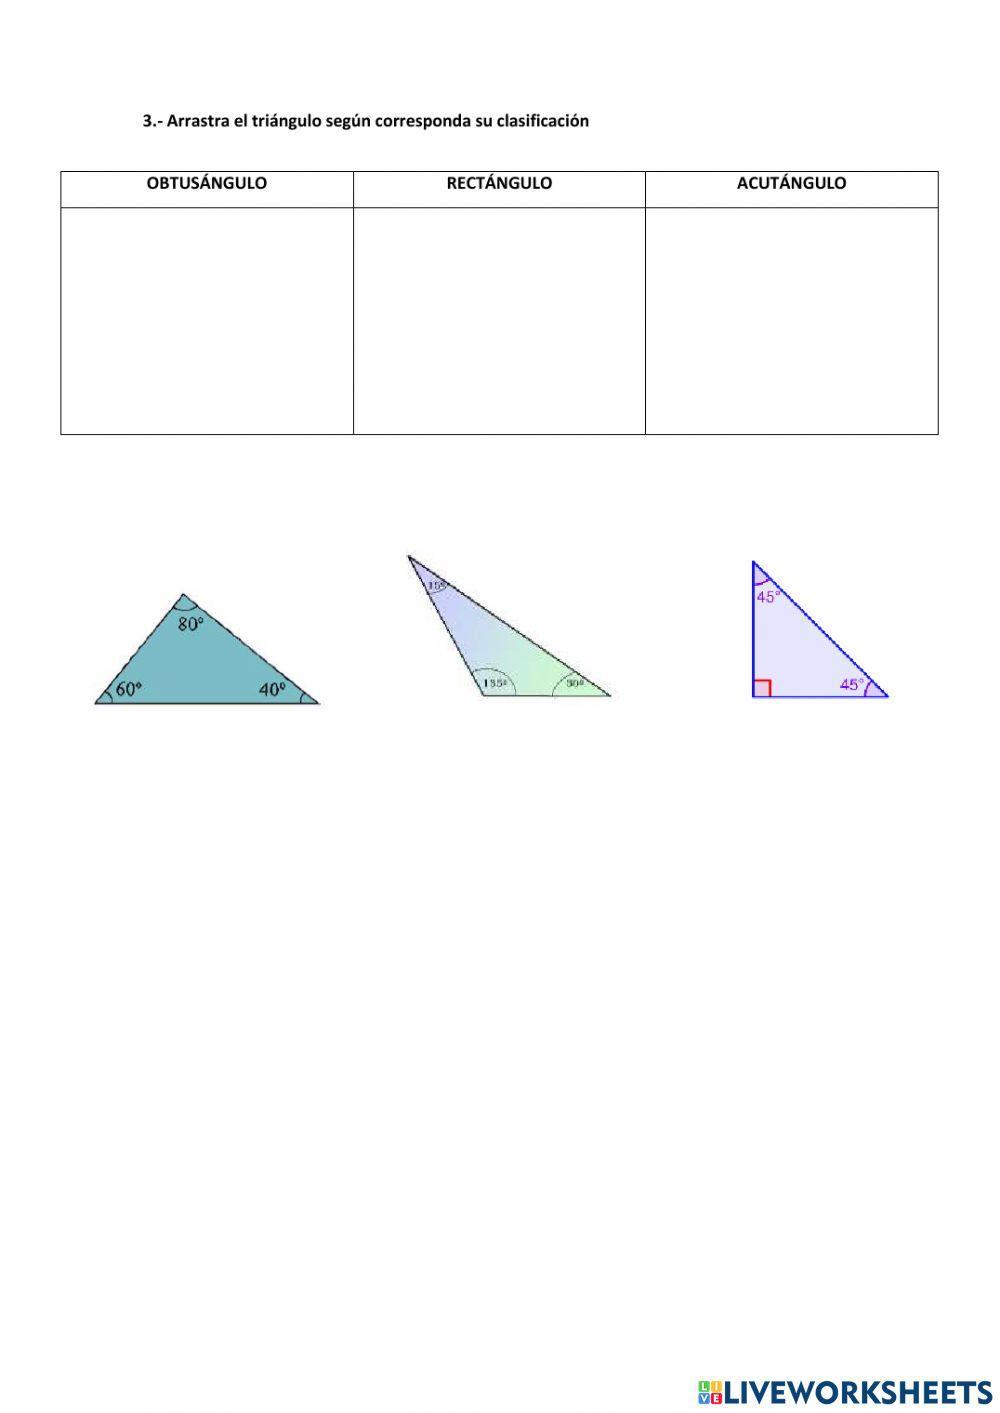 Tipos de triángulos